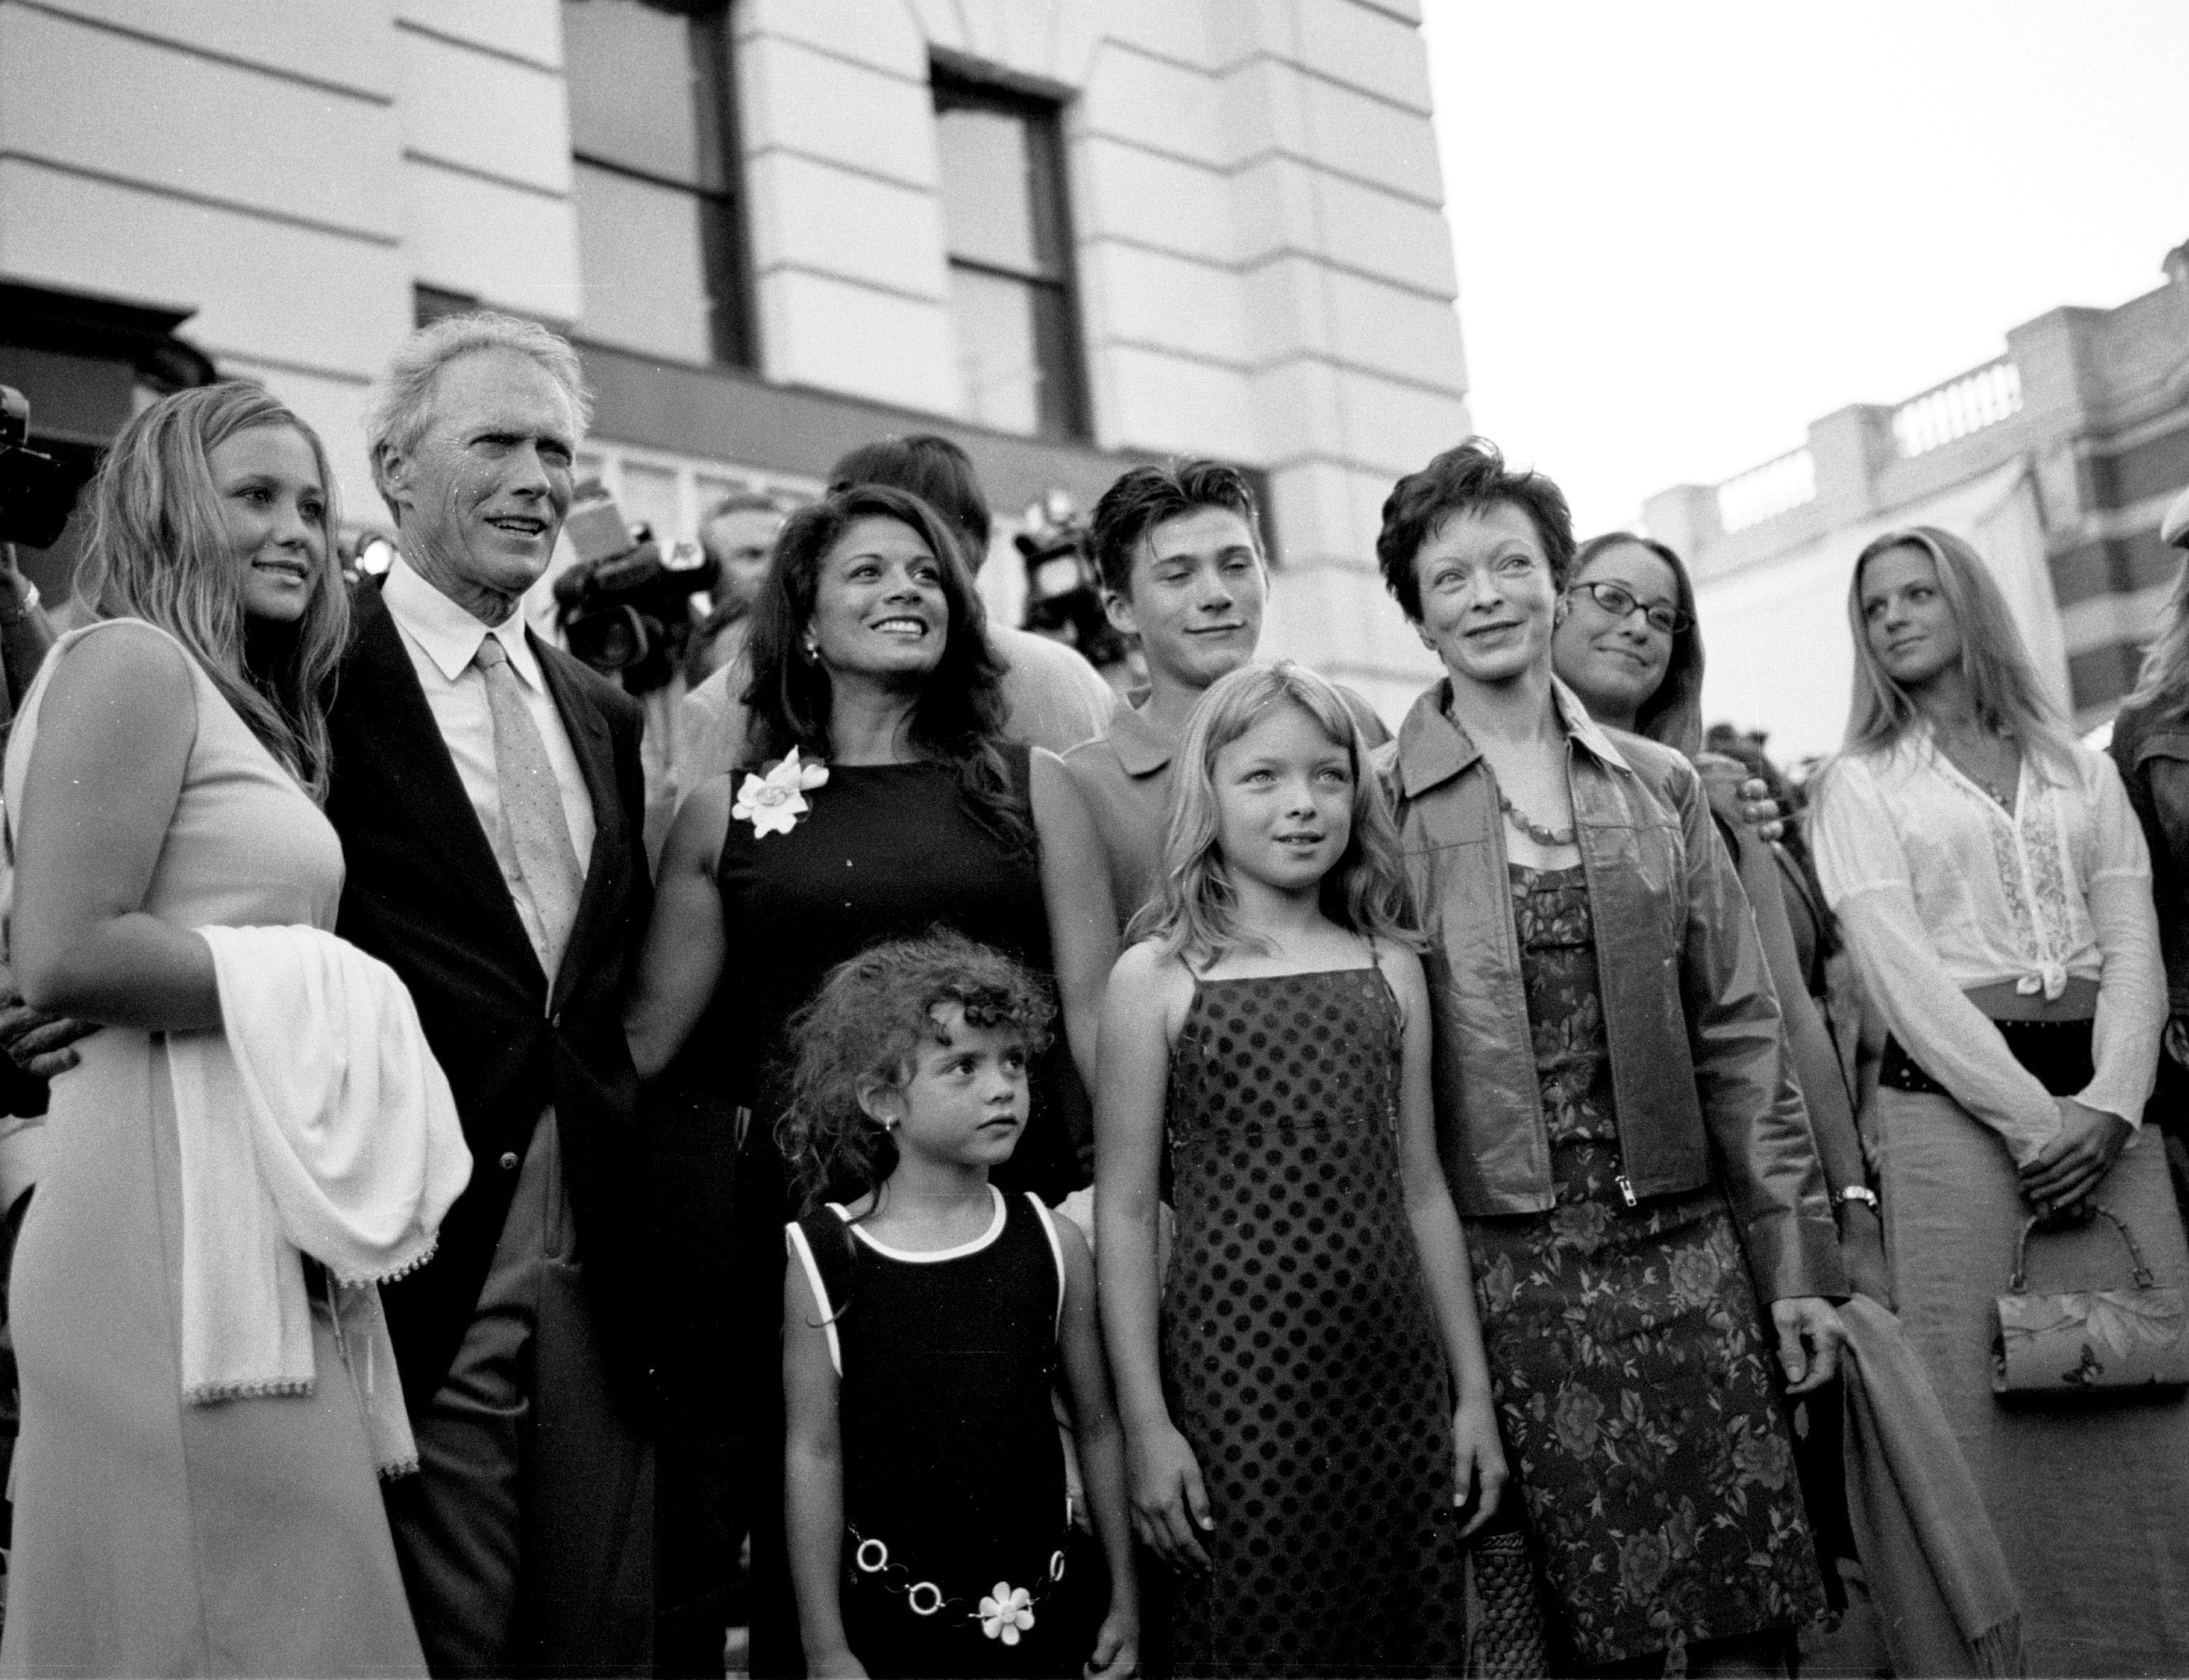 Clint Eastwood, sa femme Dina Ruiz, les enfants de Clint et son ancienne femme Frances Fisher arrivent à la première de "Blood Work", le 6 août 2002 | Source : Getty Images